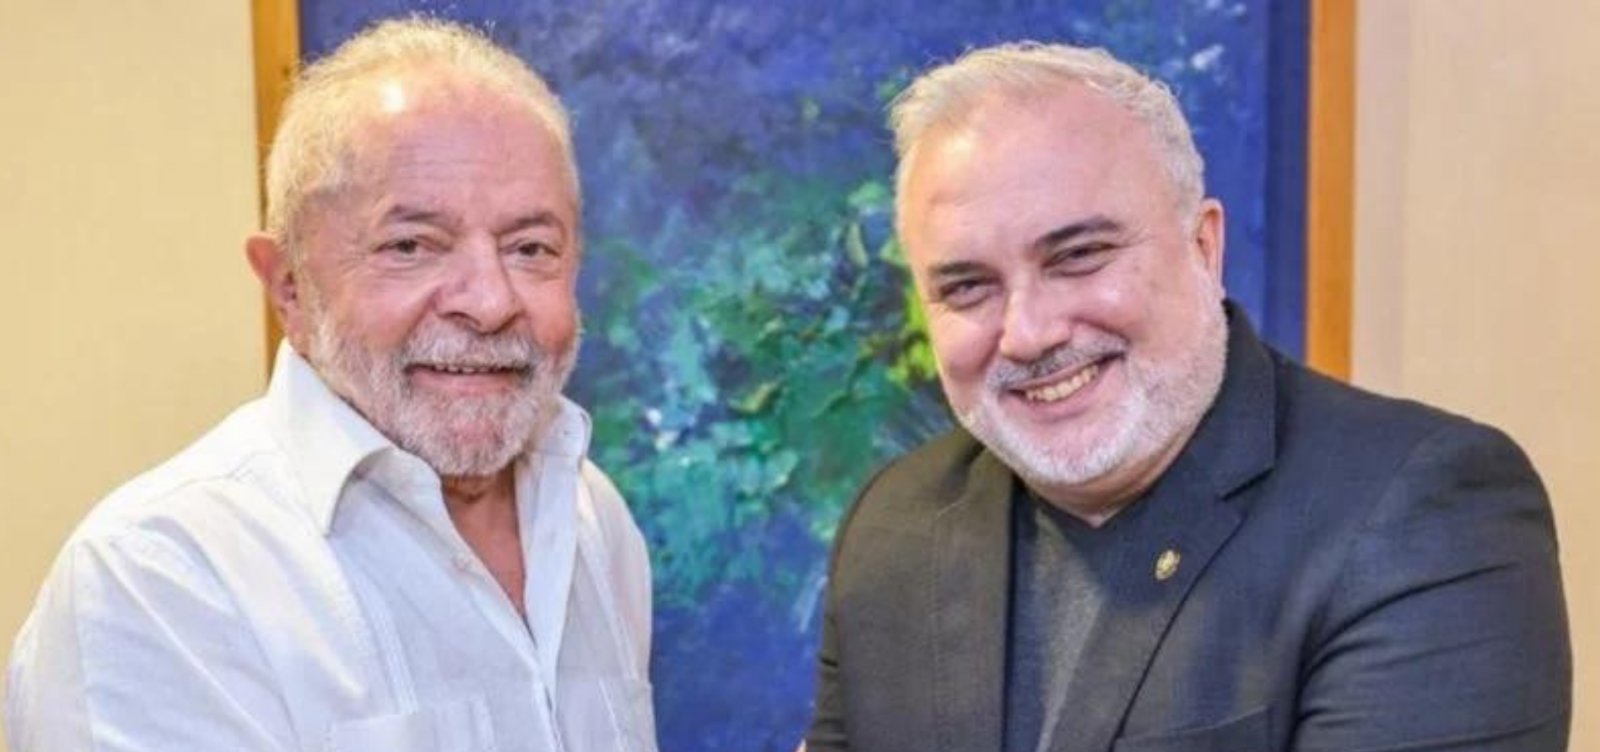 Em entrevista, presidente da Petrobras nega pressão do governo Lula: "São diretrizes"